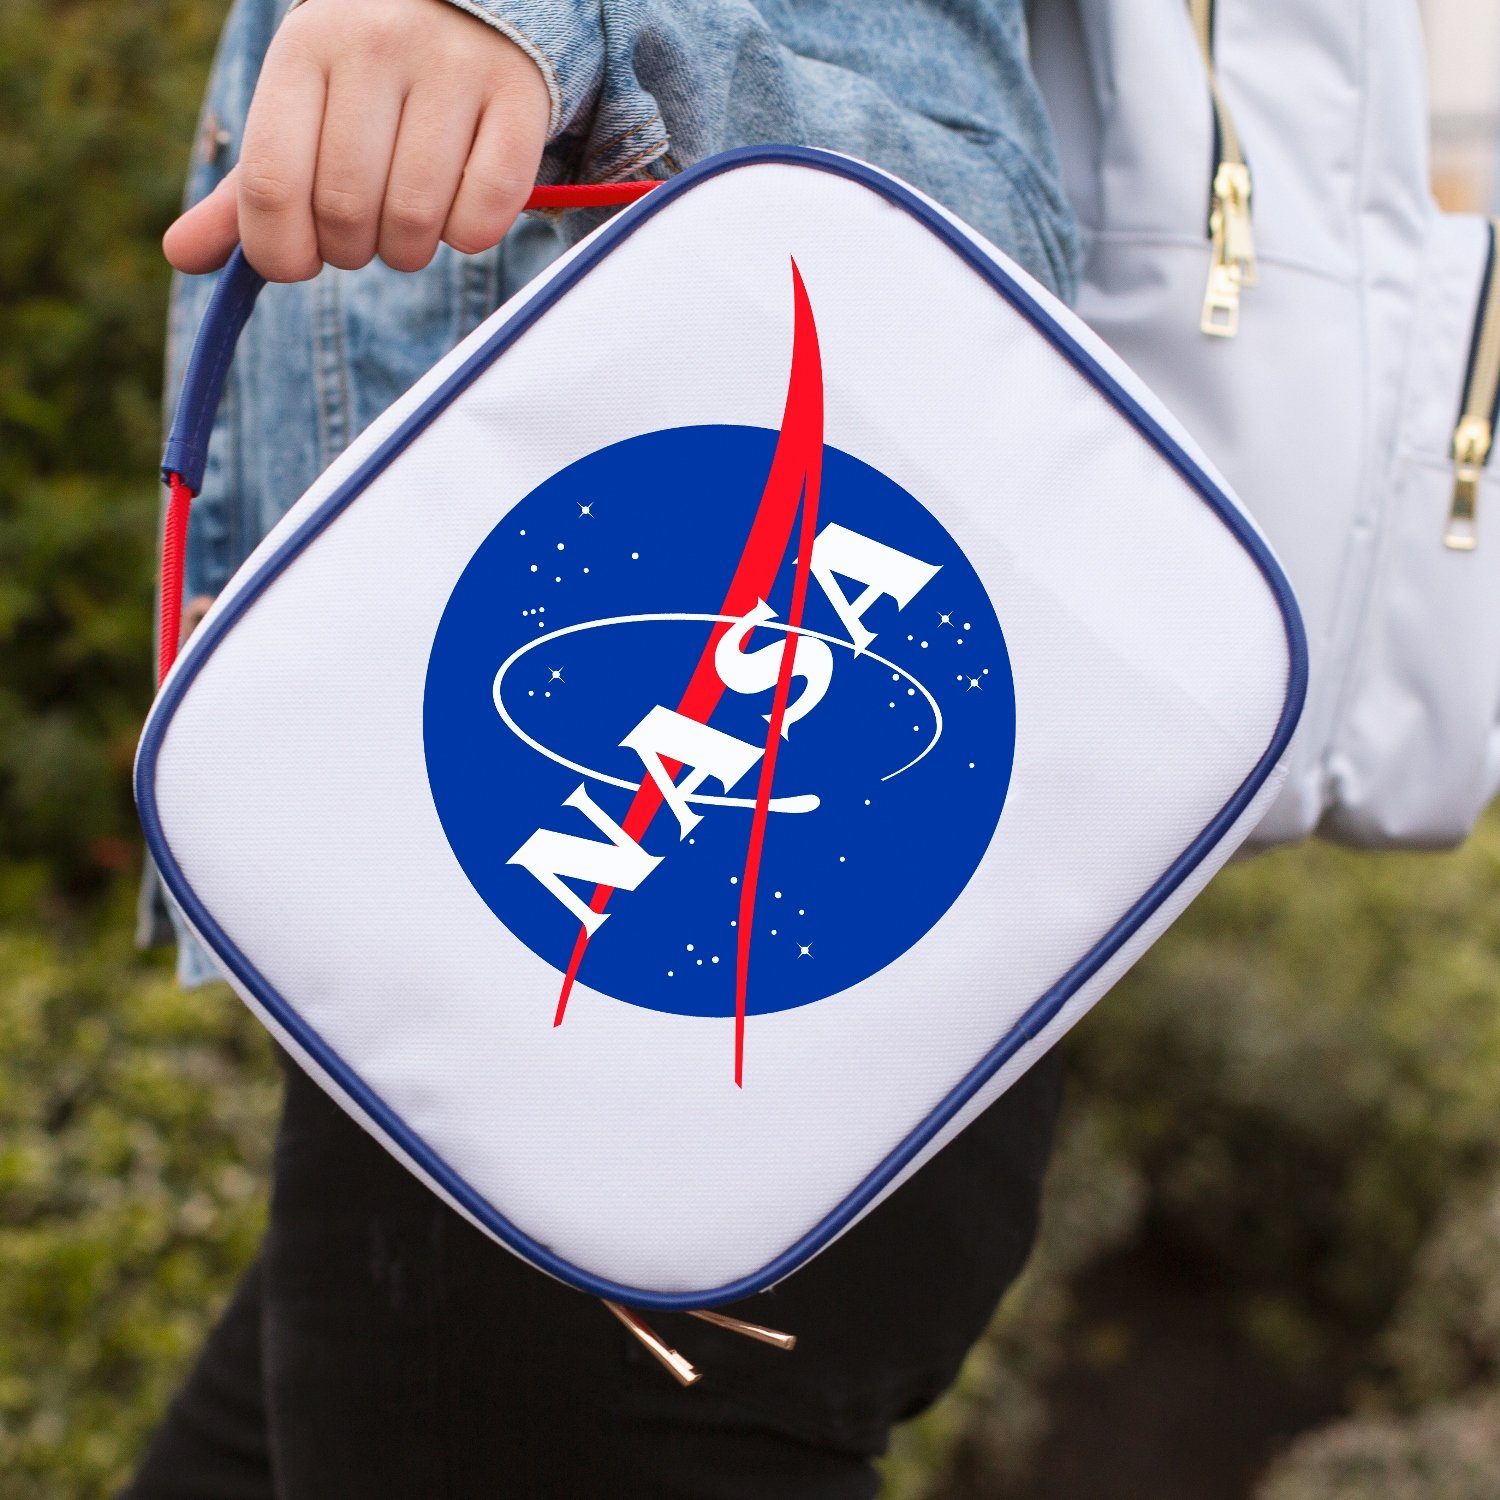 NASA Brottasche Lunchtasche Reißverschluss weiß NASA mit 